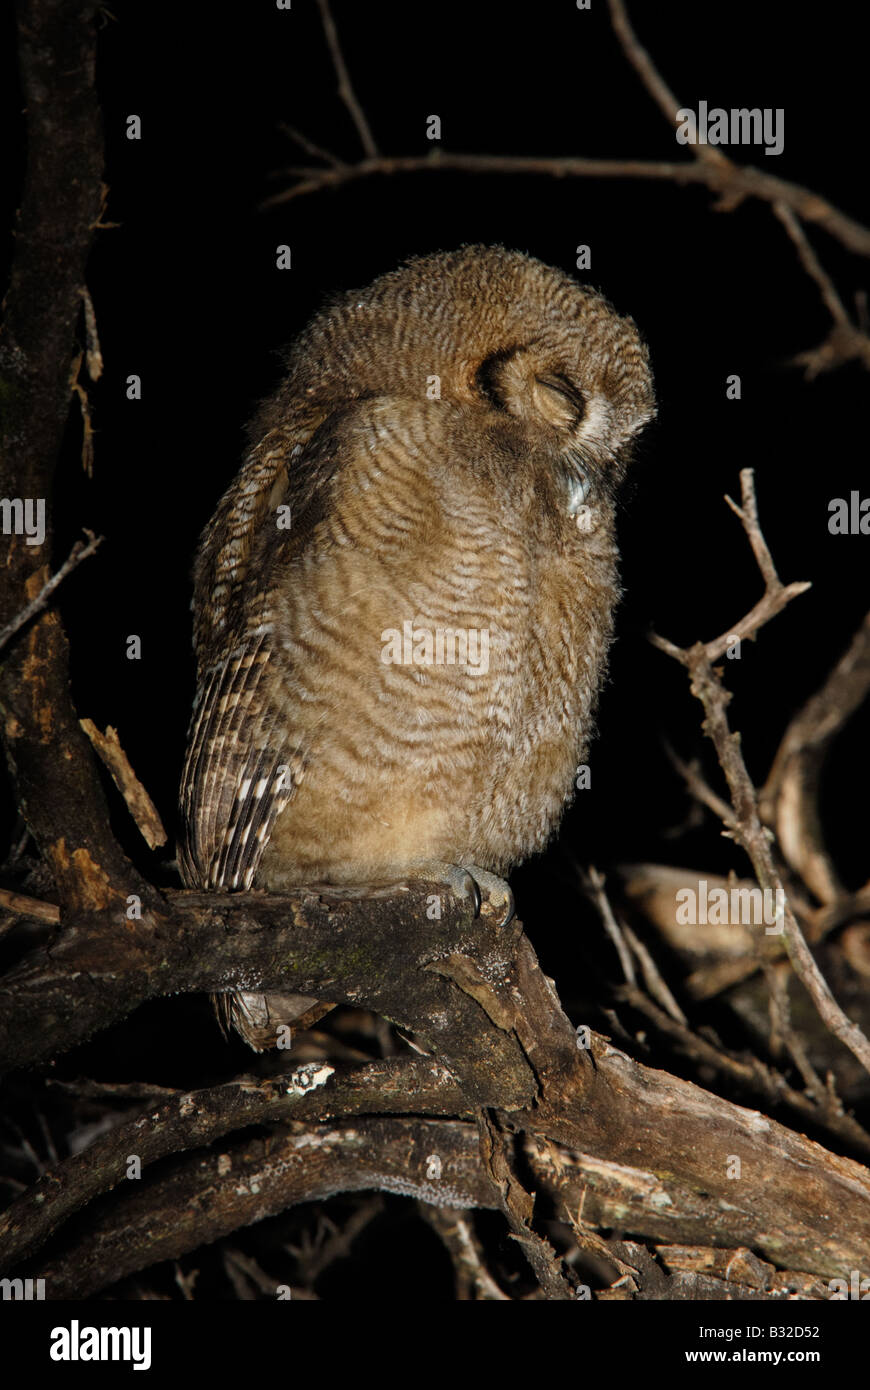 Juvenile Tropical-screech Owl taking a nap Stock Photo